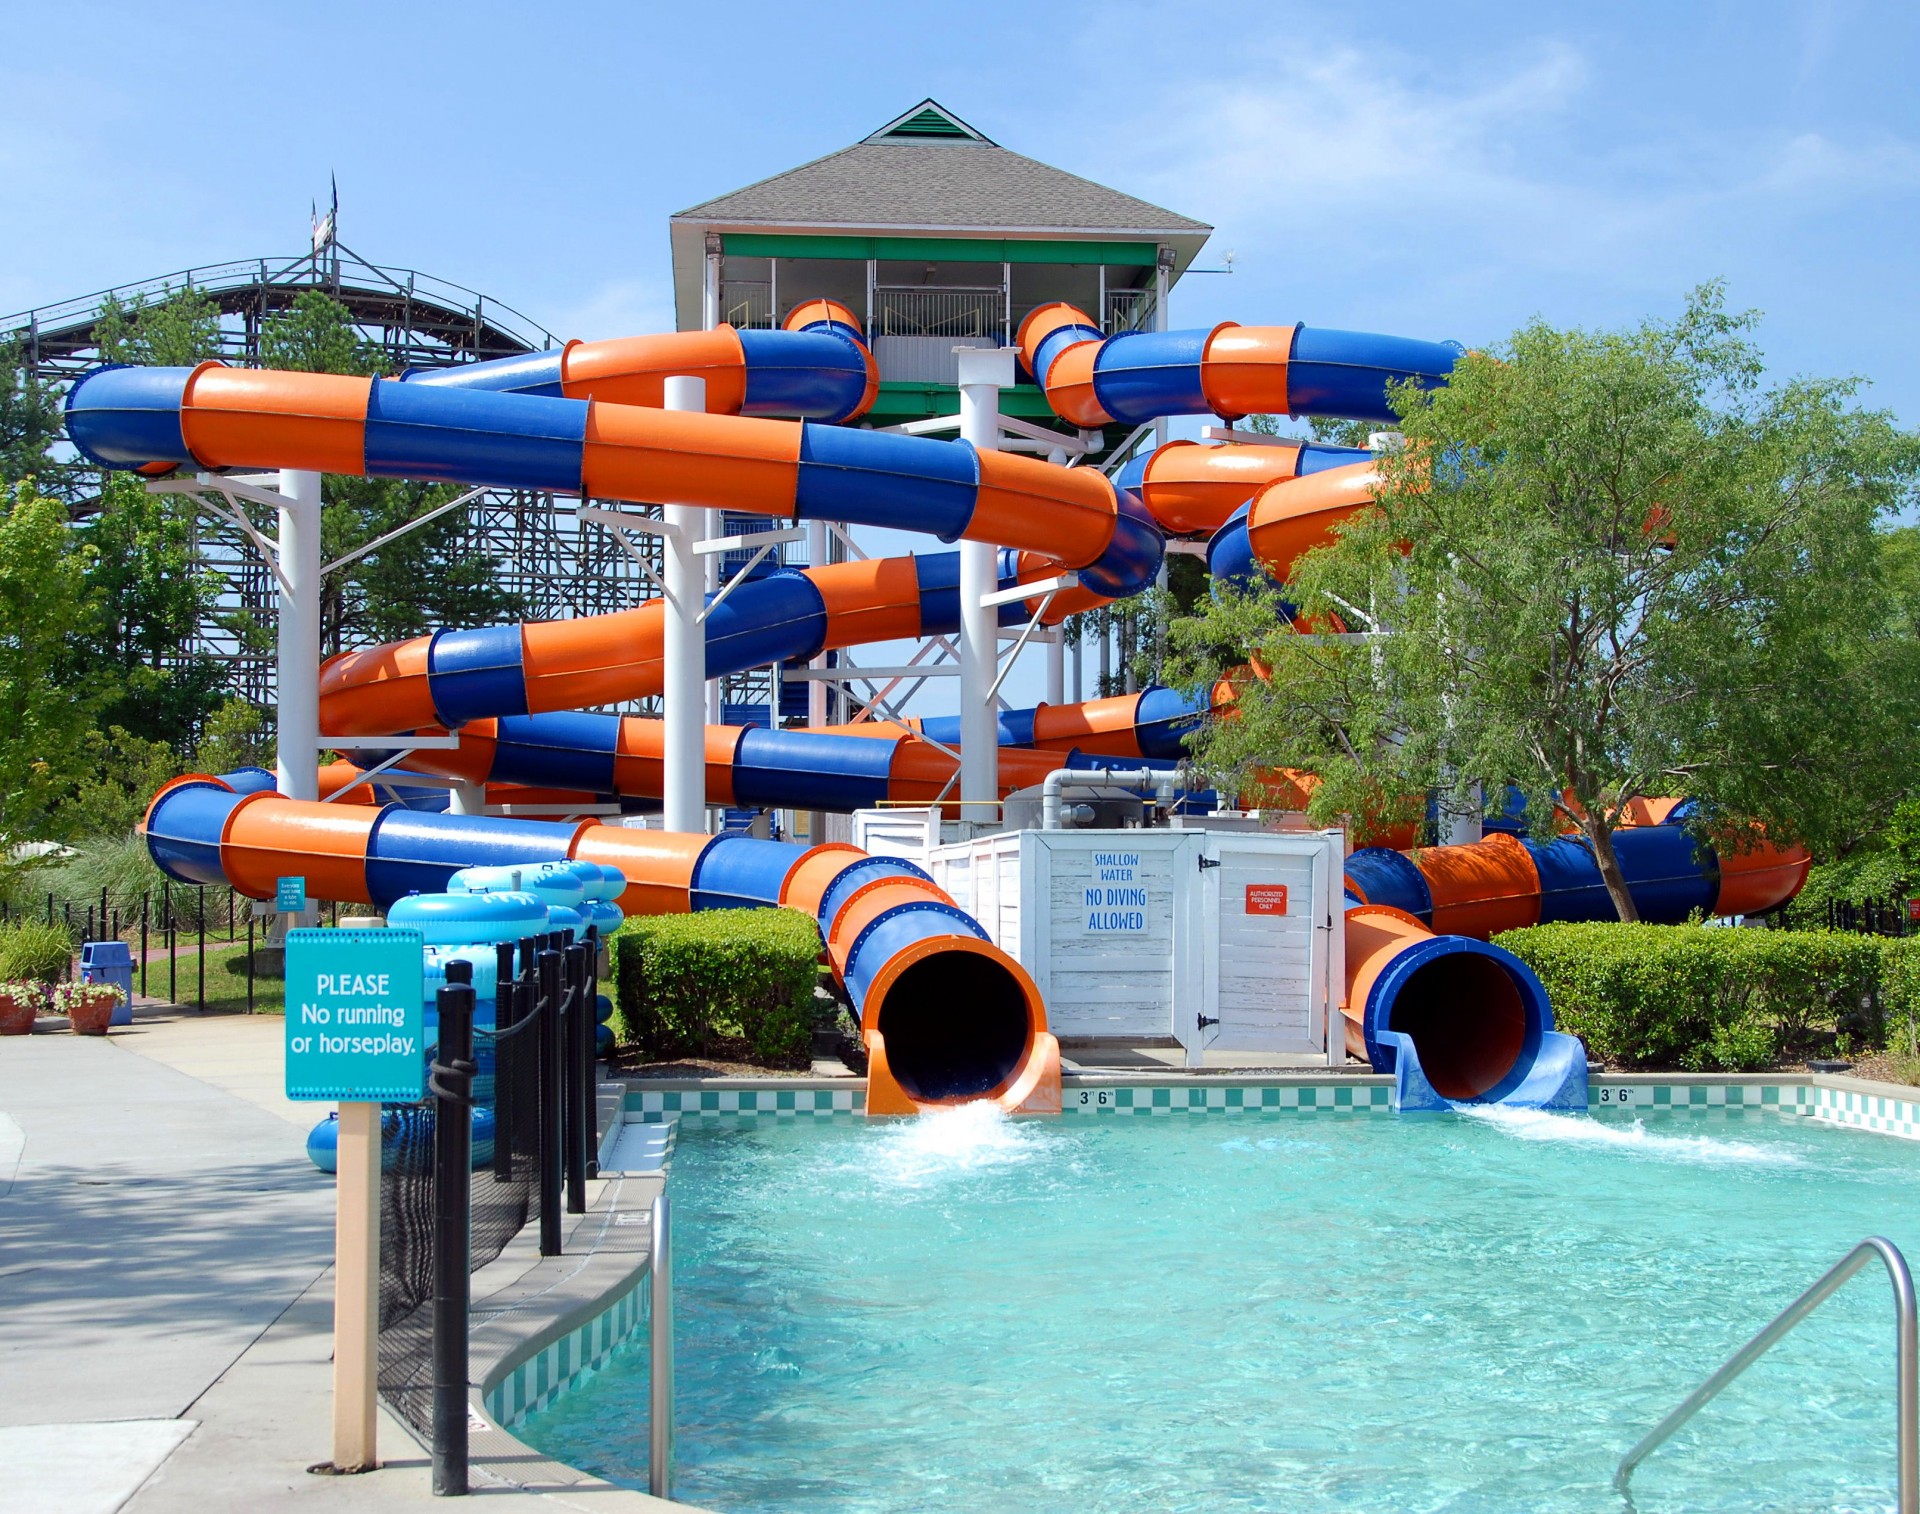 Water park slide at amusement park